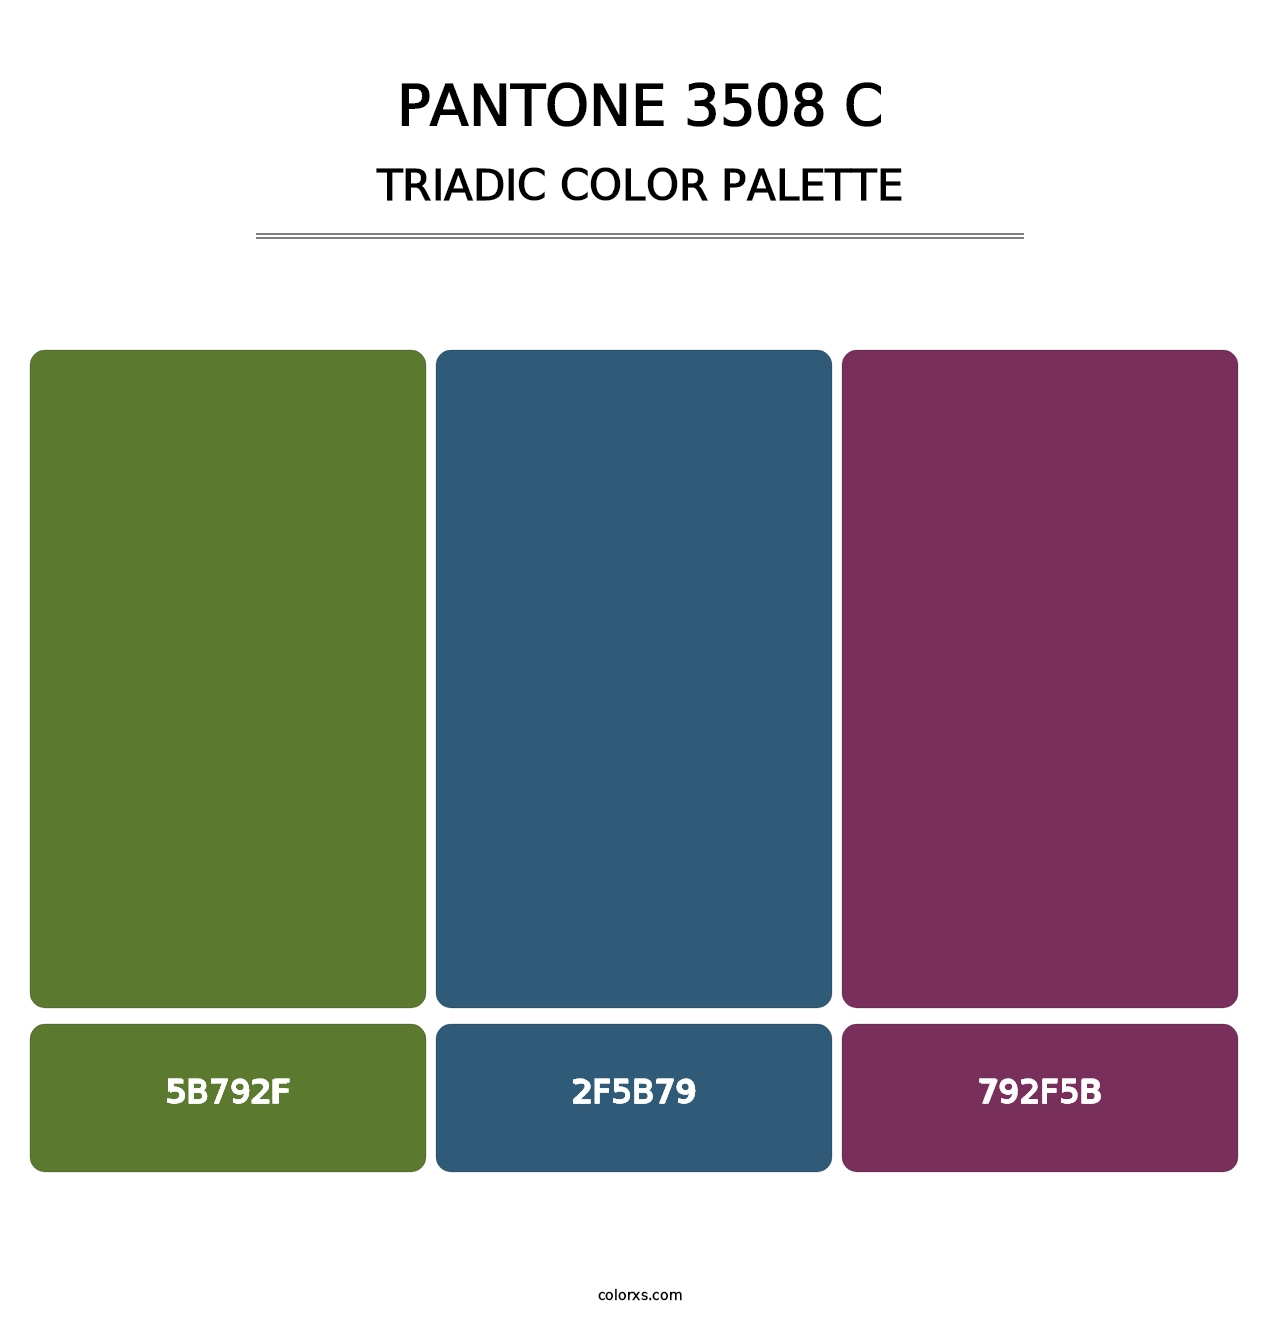 PANTONE 3508 C - Triadic Color Palette